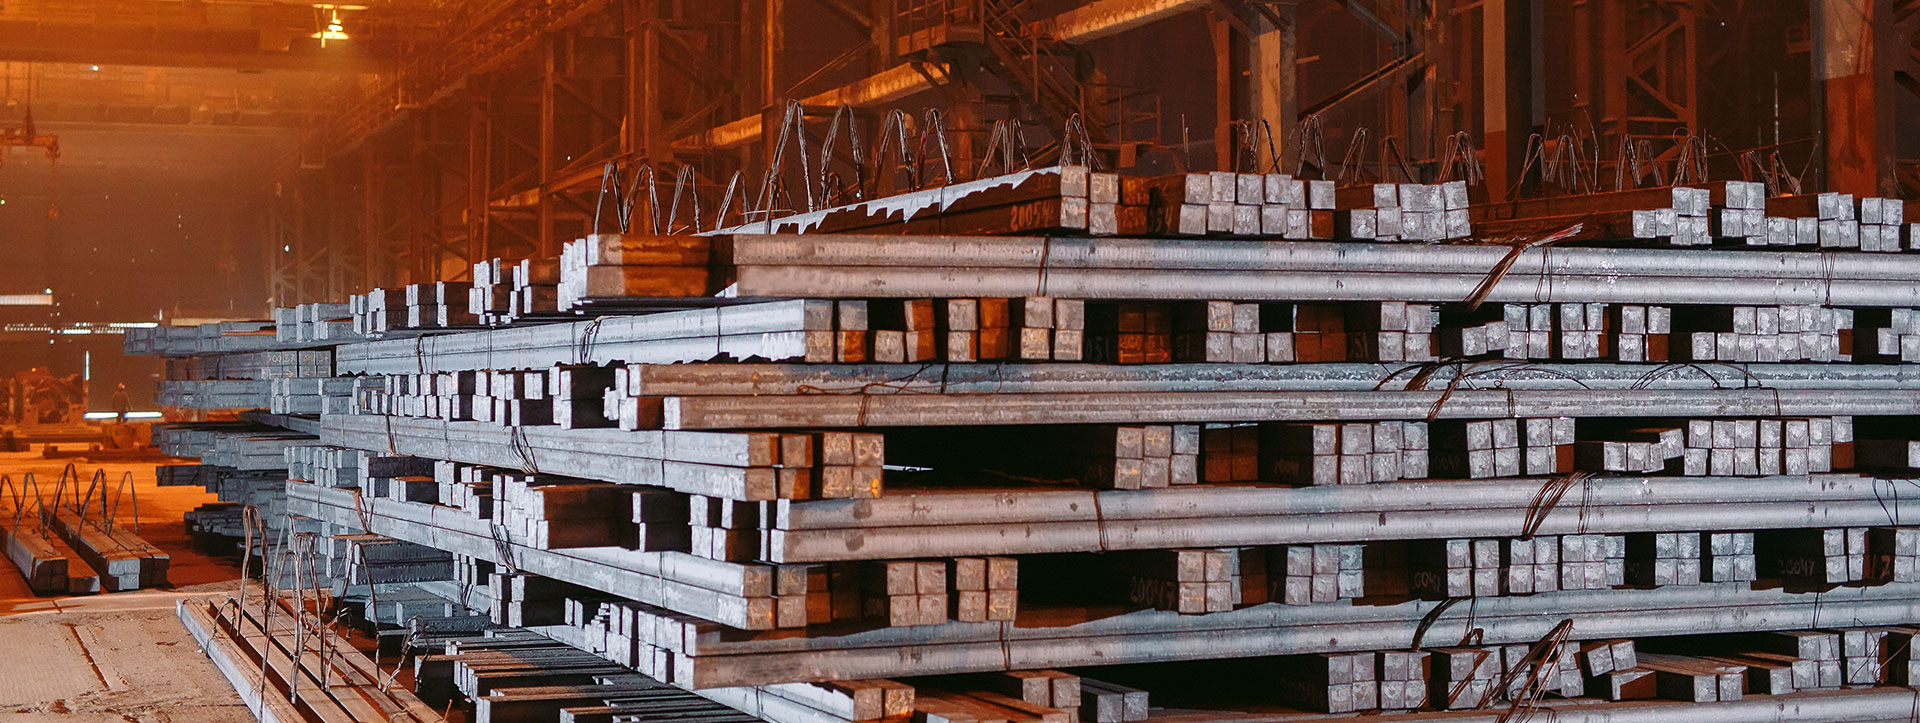 Steel Refractories Plant in India